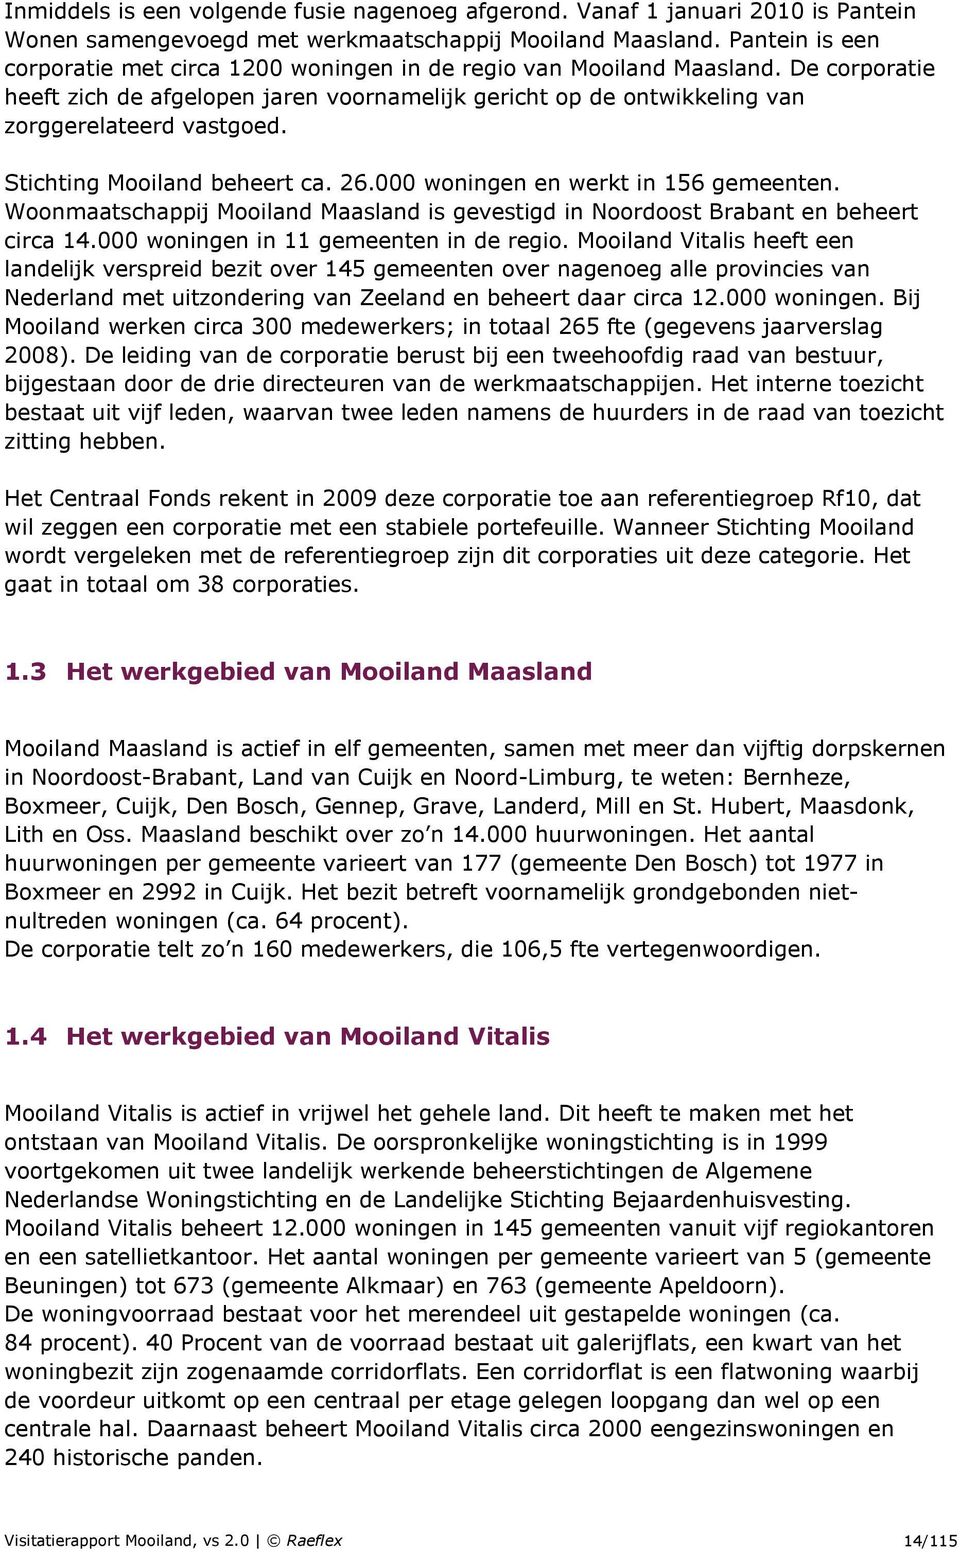 Stichting Mooiland beheert ca. 26.000 woningen en werkt in 156 gemeenten. Woonmaatschappij Mooiland Maasland is gevestigd in Noordoost Brabant en beheert circa 14.